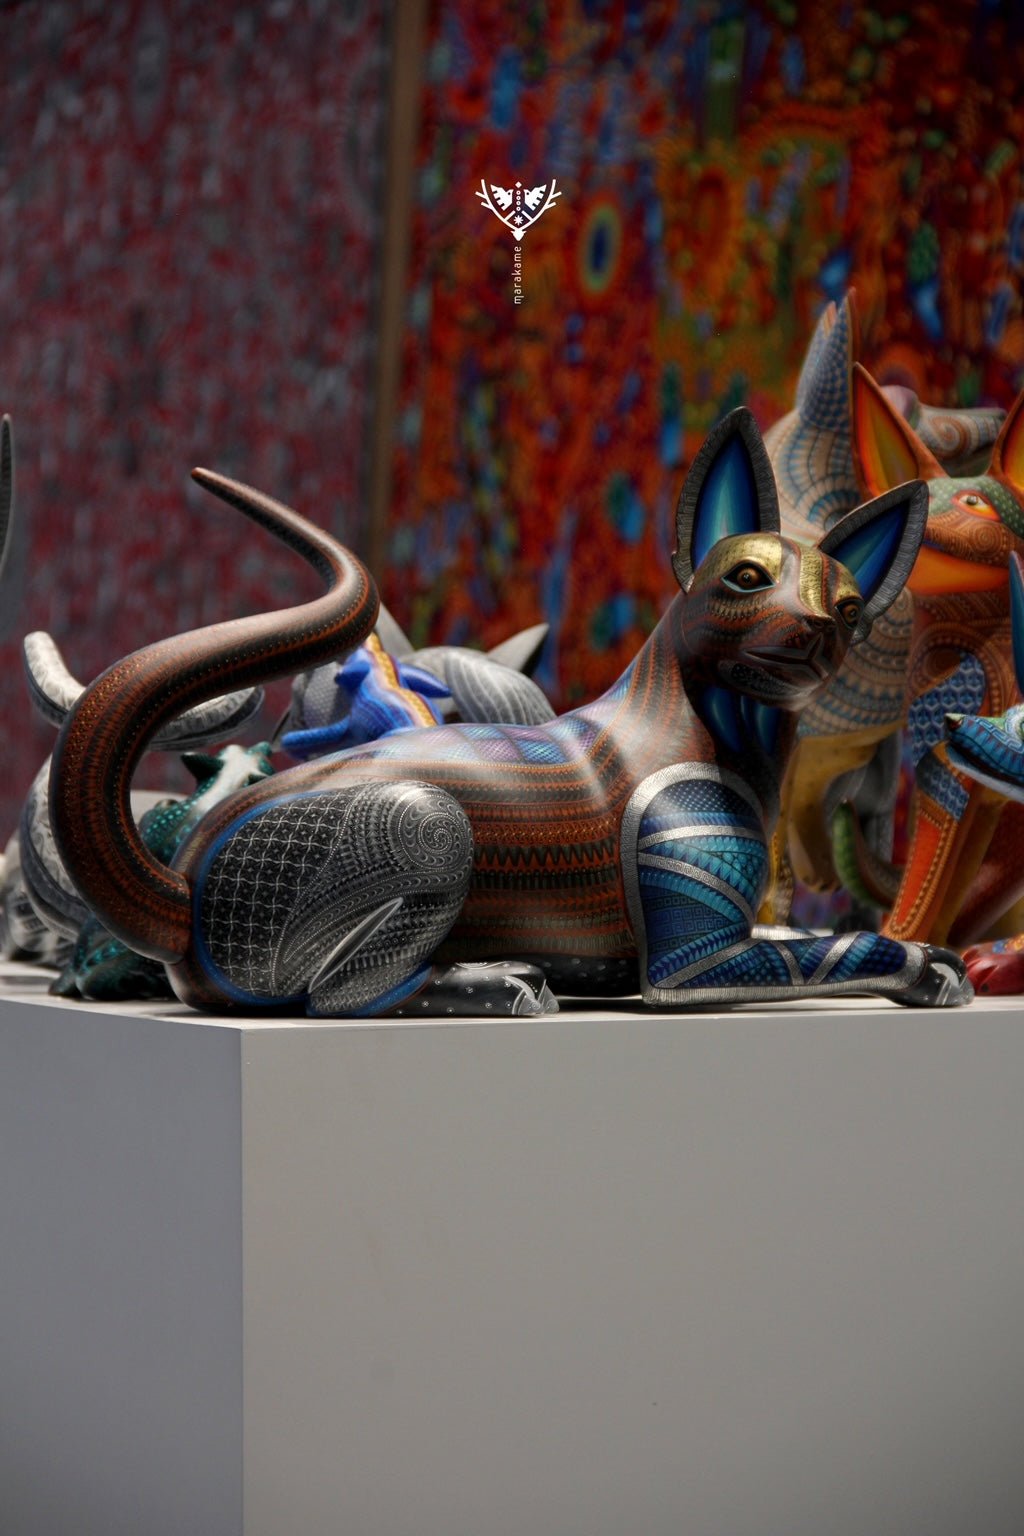 Alebrije - The Xoloitzcuintle - Huichol Art - Marakame